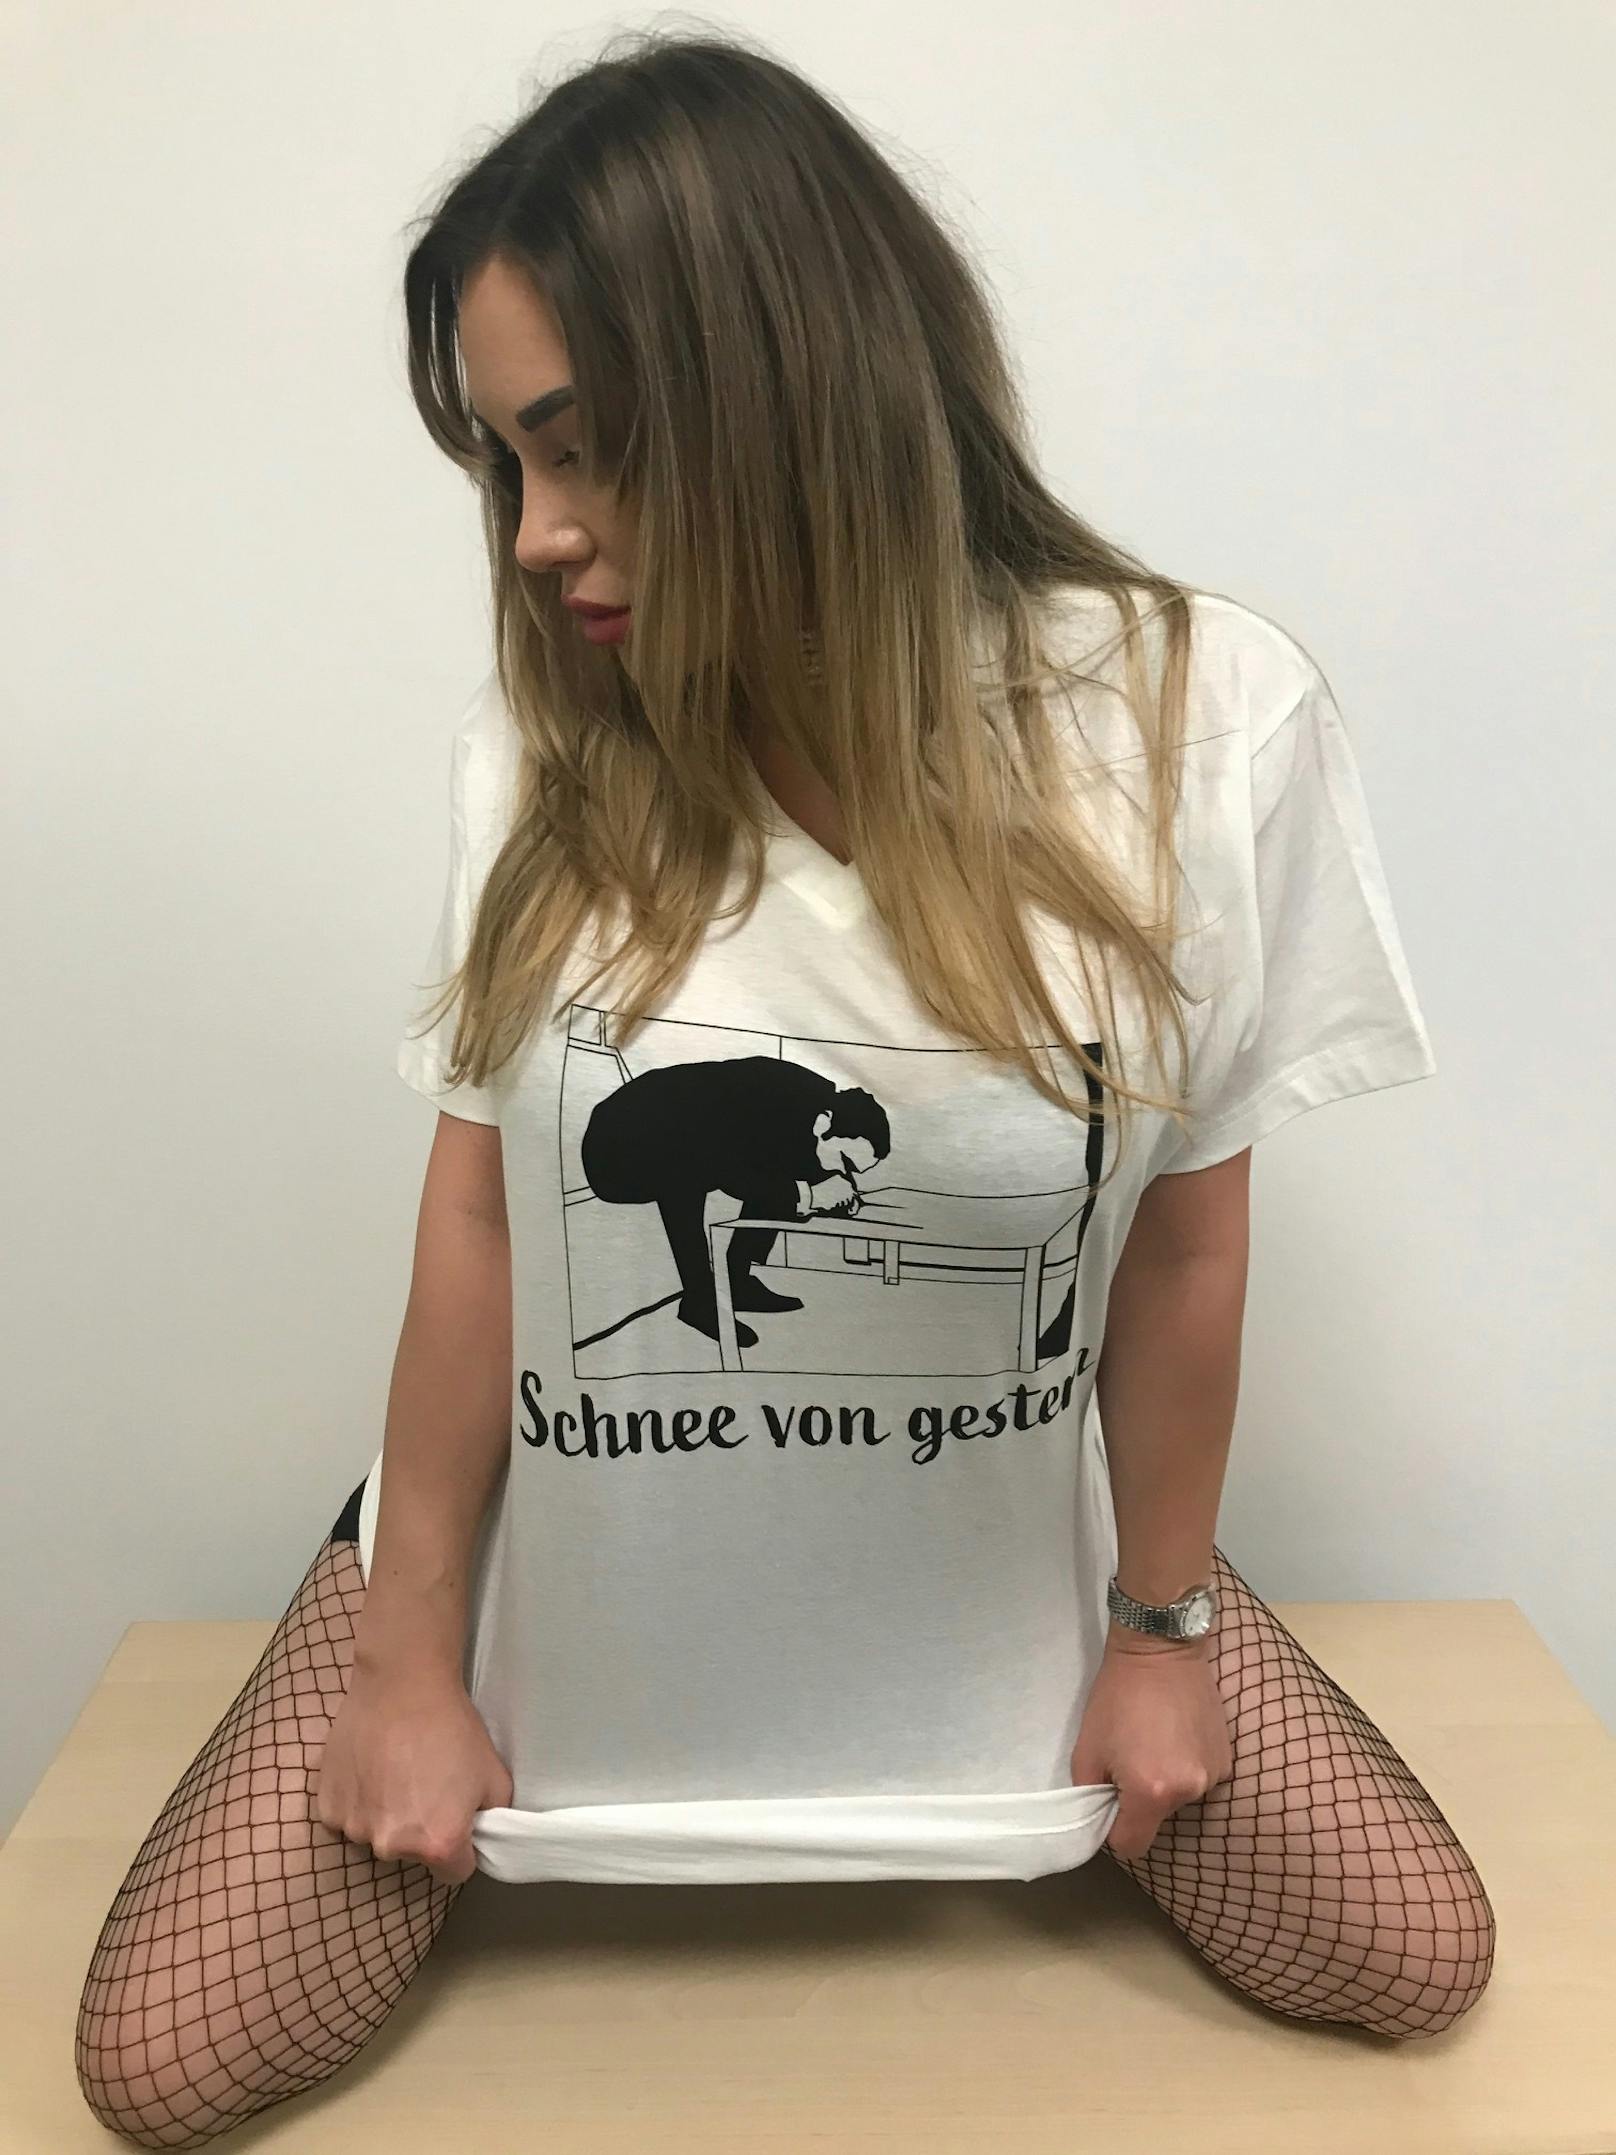 Lugner-Stripperin Candice posiert in Gudenus-Shirts und sorgt damit für Aufregung.